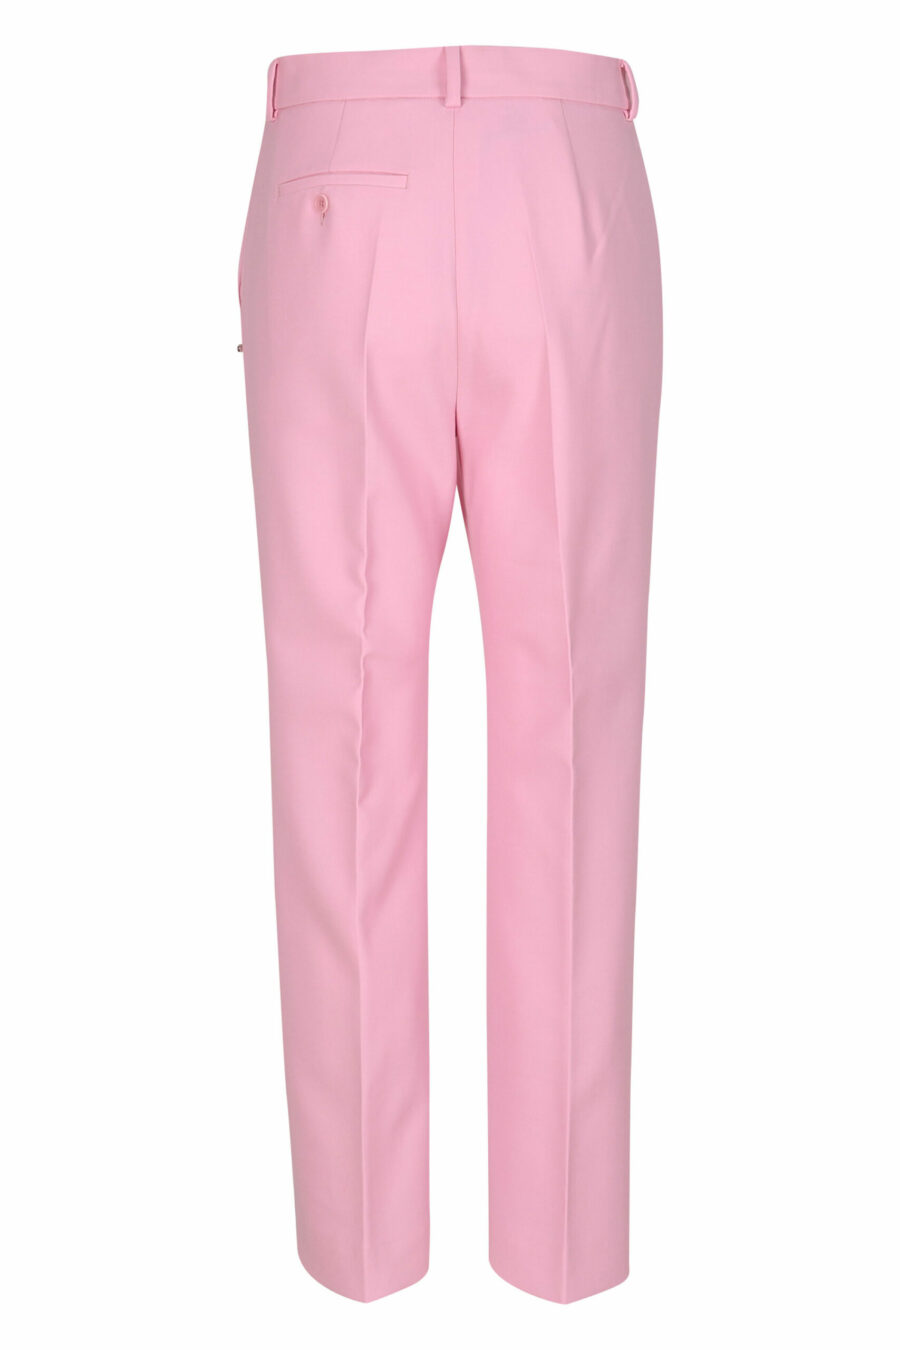 Pantalon large de couleur rose - 21310741060053 2 échelles